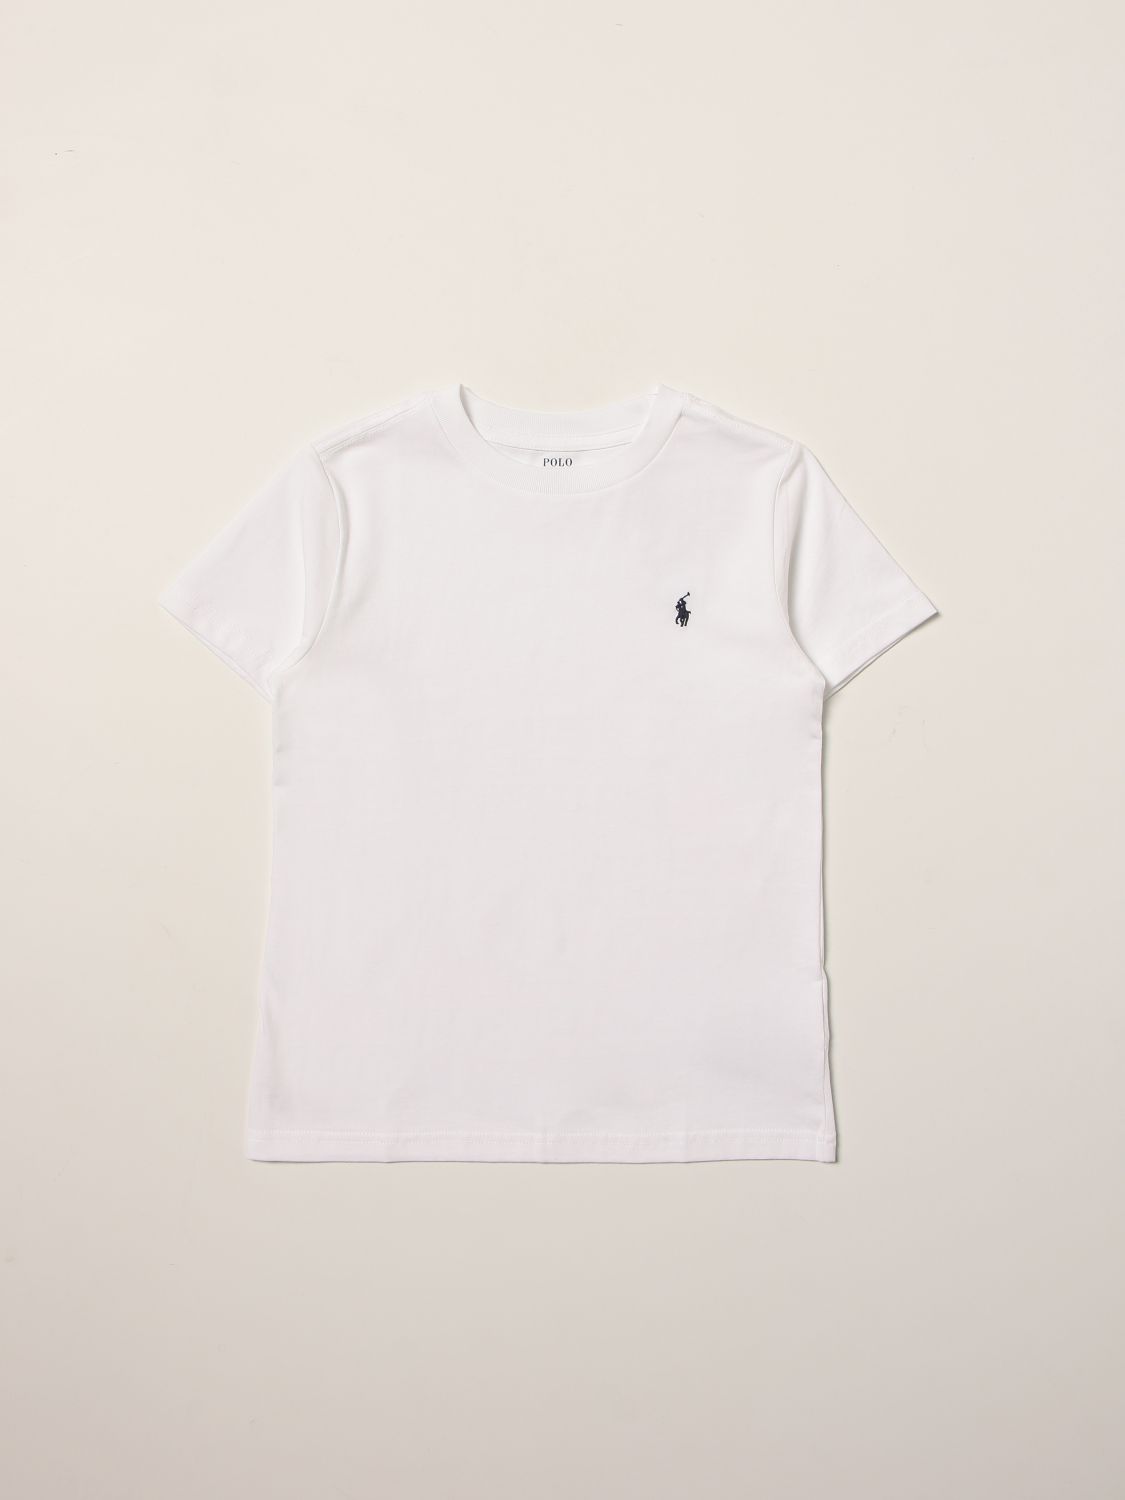 Tシャツ ポロラルフローレン: Tシャツ Polo Ralph Lauren 男の子 ホワイト 1